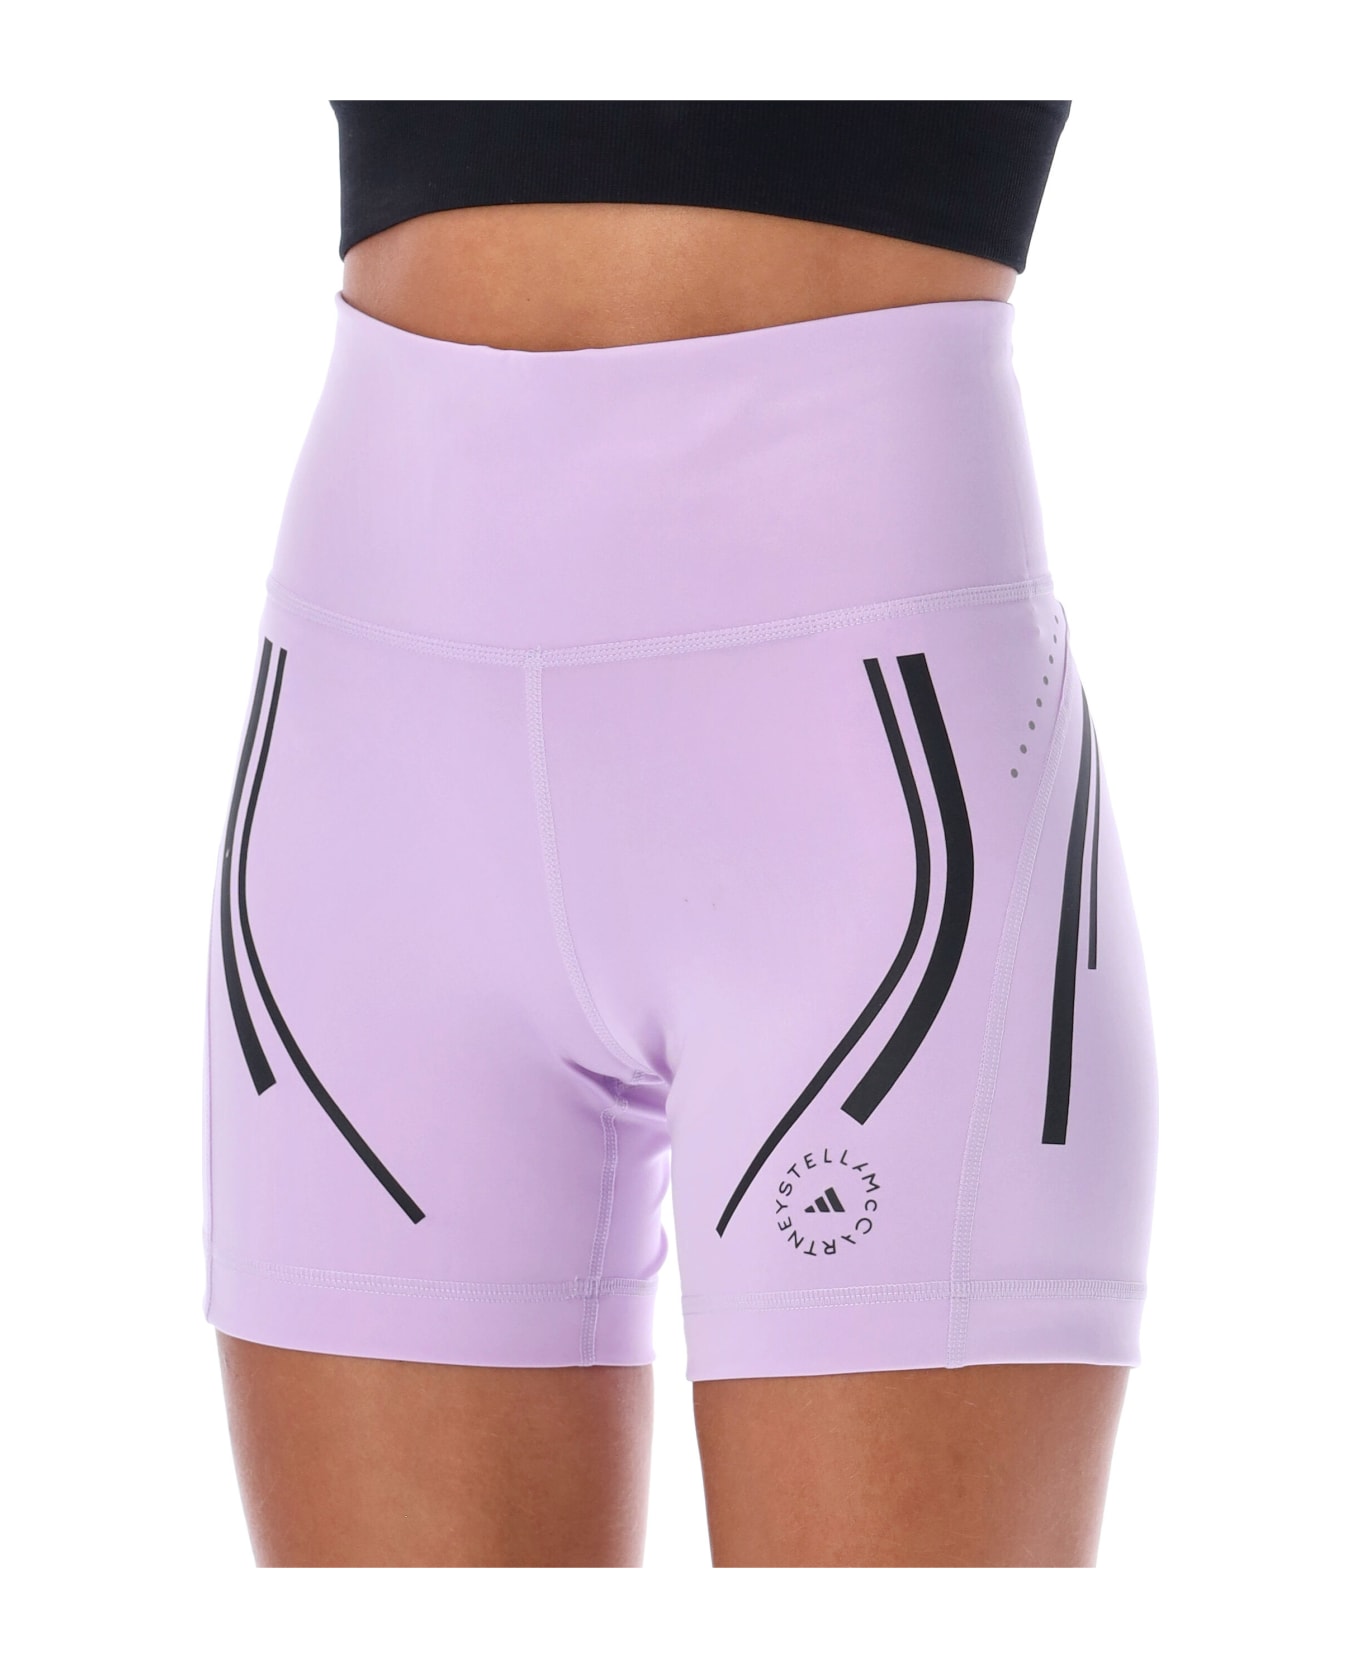 Adidas by Stella McCartney Truepace High-waisted Cycling Shorts - PURPLE GLOW